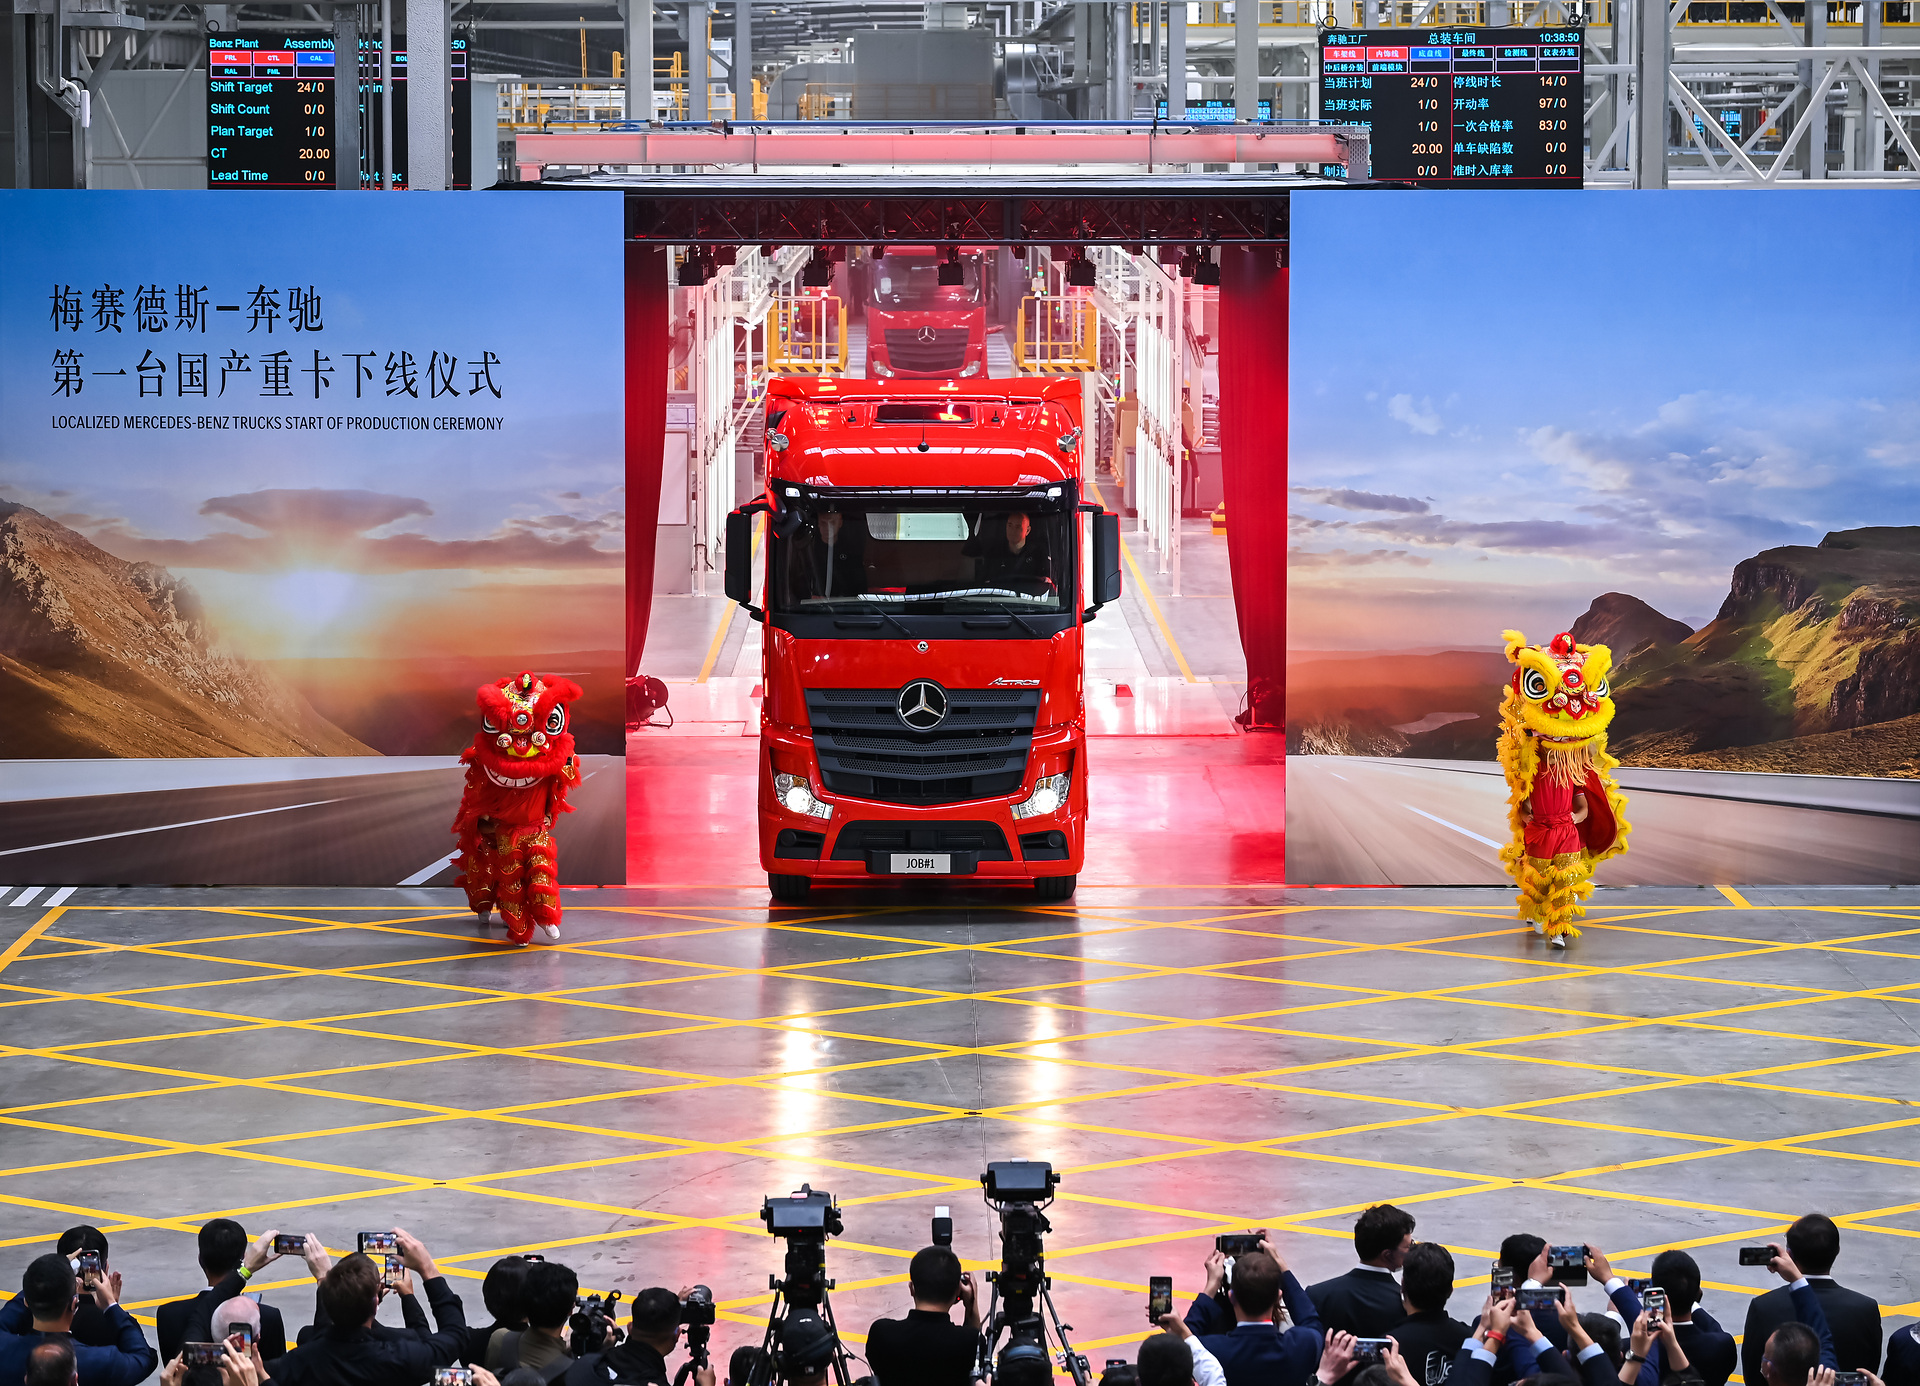 Daimler Truck erreicht wichtigen Meilenstein in China mit dem Start der lokalen Produktion von Mercedes-Benz Lkw für den chinesischen Markt